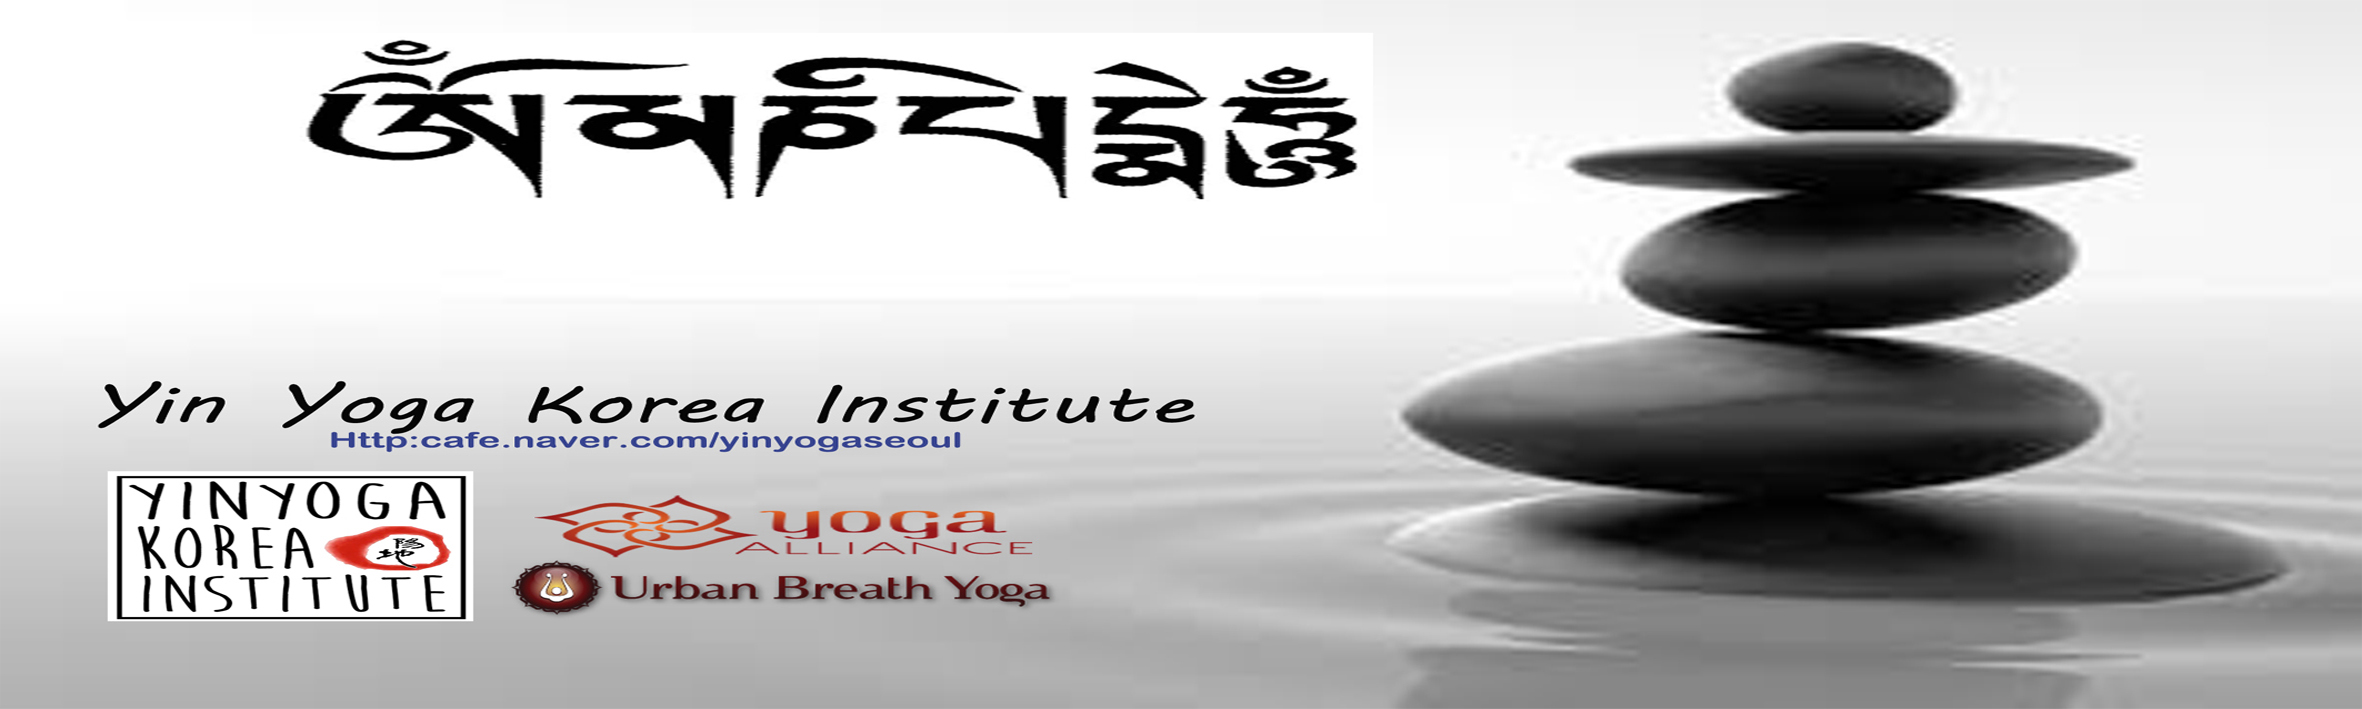 Yin yoga korea institute